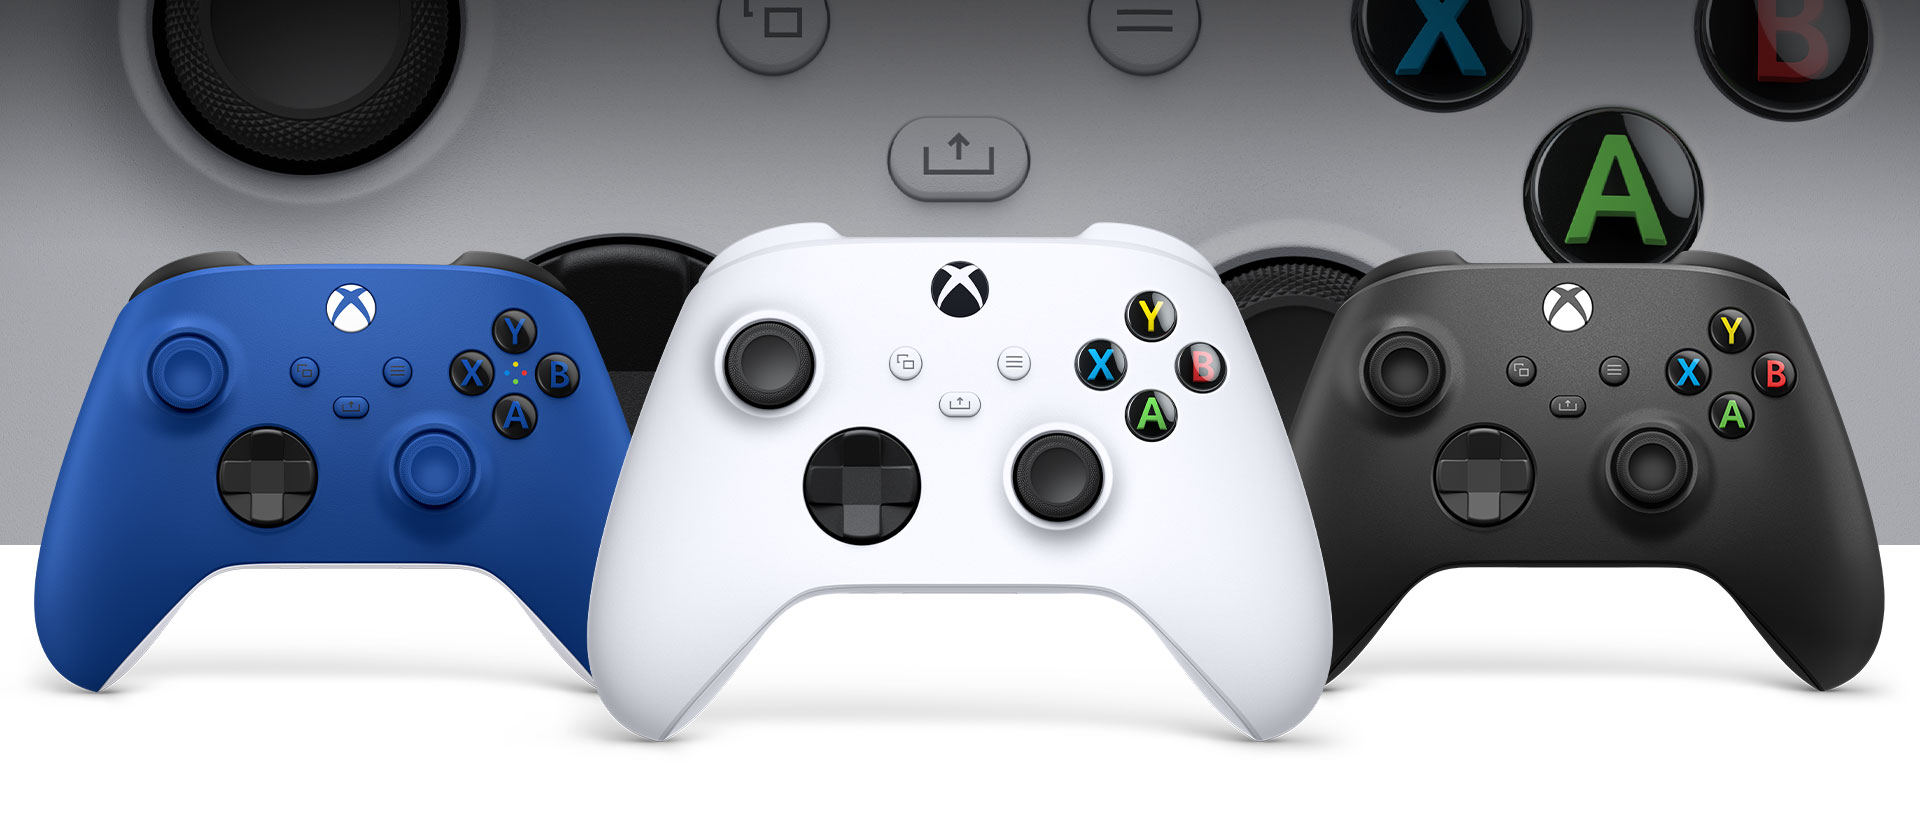 Геймпад Xbox в белом цвете Robot White на переднем плане, рядом расположены геймпад Xbox в черном цвете Carbon Black и геймпад в сине-голубом цвете Shock Blue